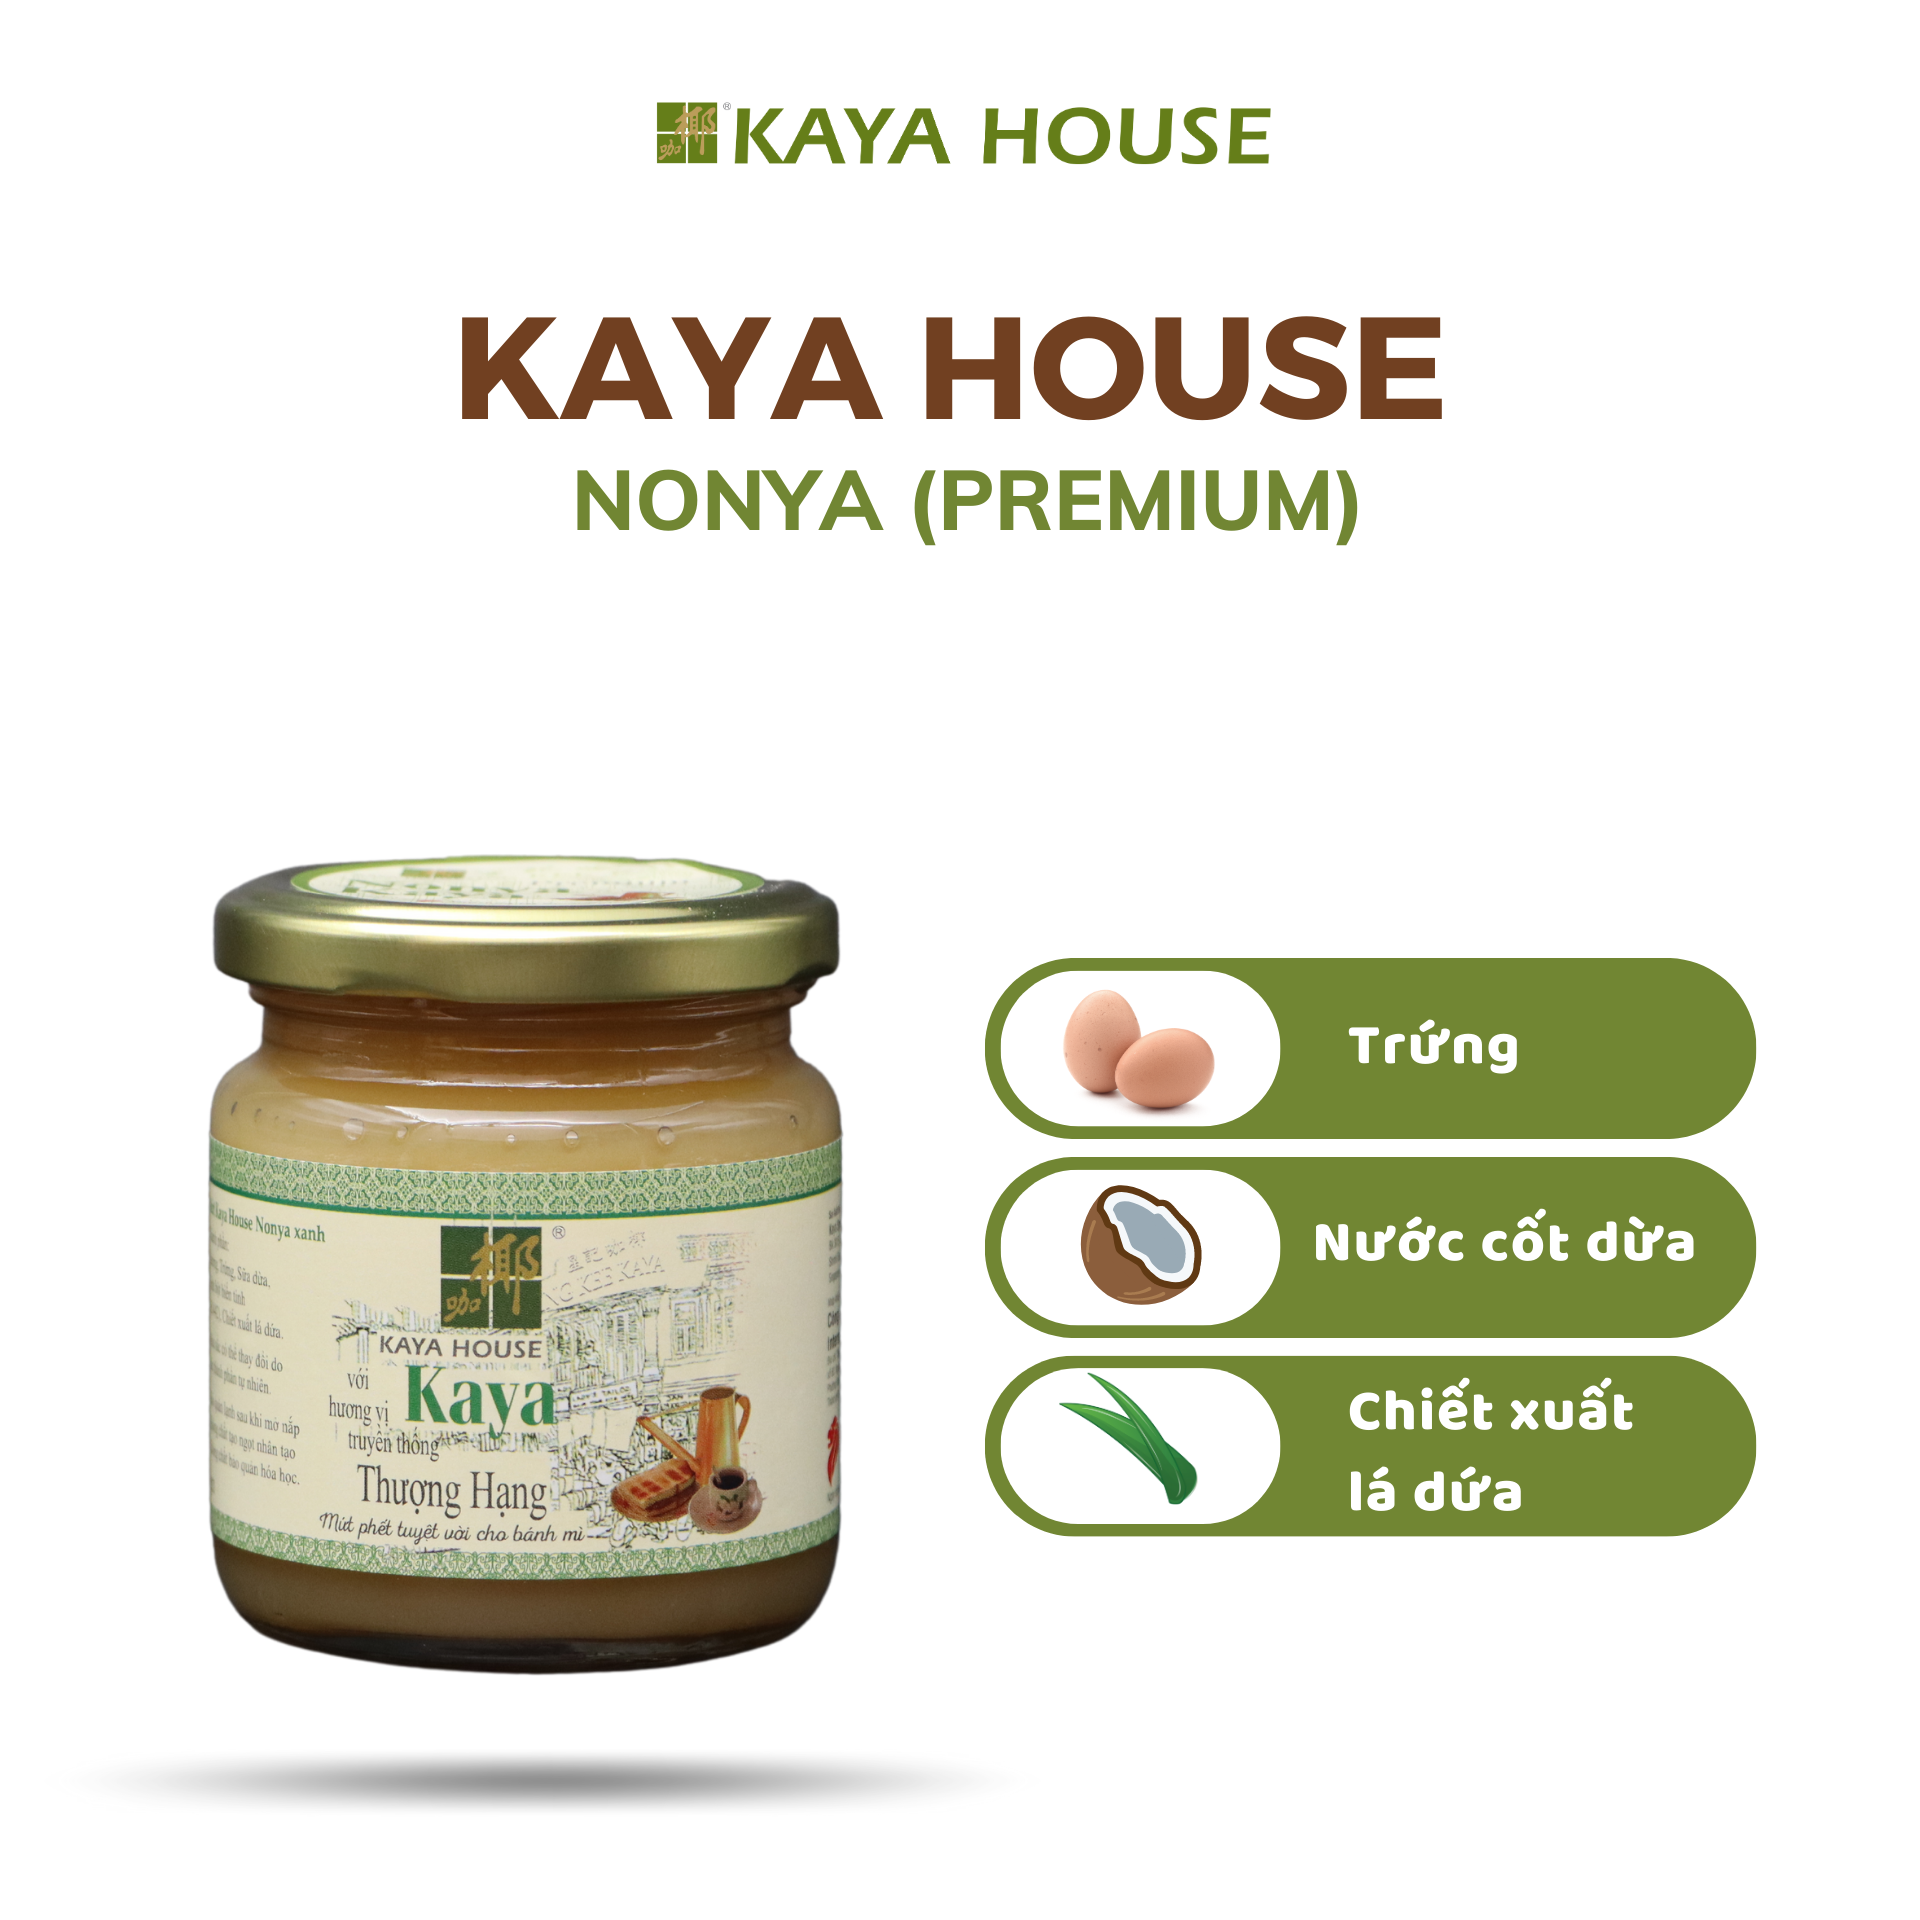 Mứt Kaya Singapore Premium Nonya hũ 240g - Kaya House - Ăn kèm với Sandwich, làm nguyên liệu nấu ăn